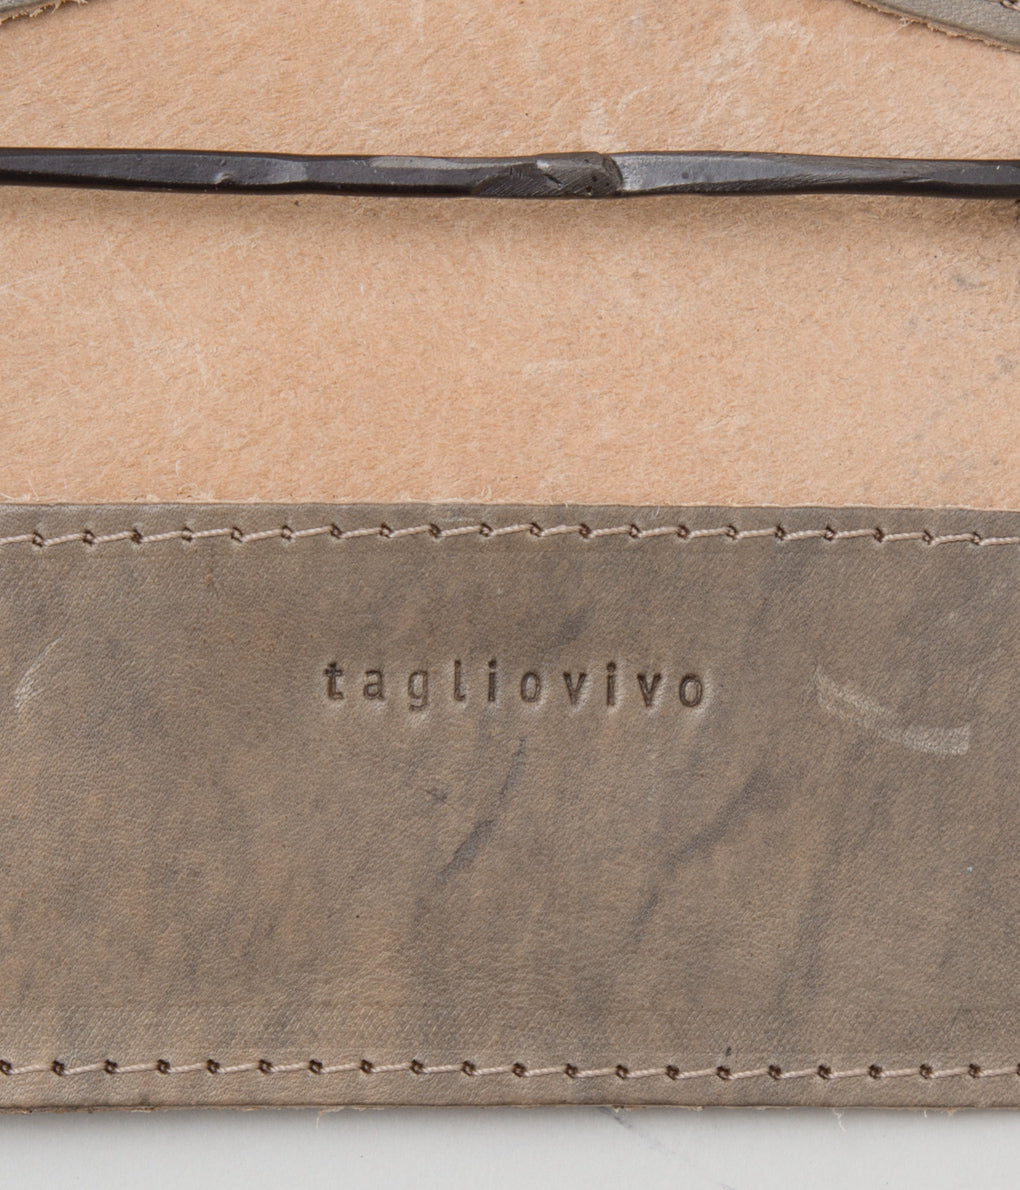 TAGLIOVIVO "CARD CASE"(HAND-DYED CULLATTA GREY BEIGE)